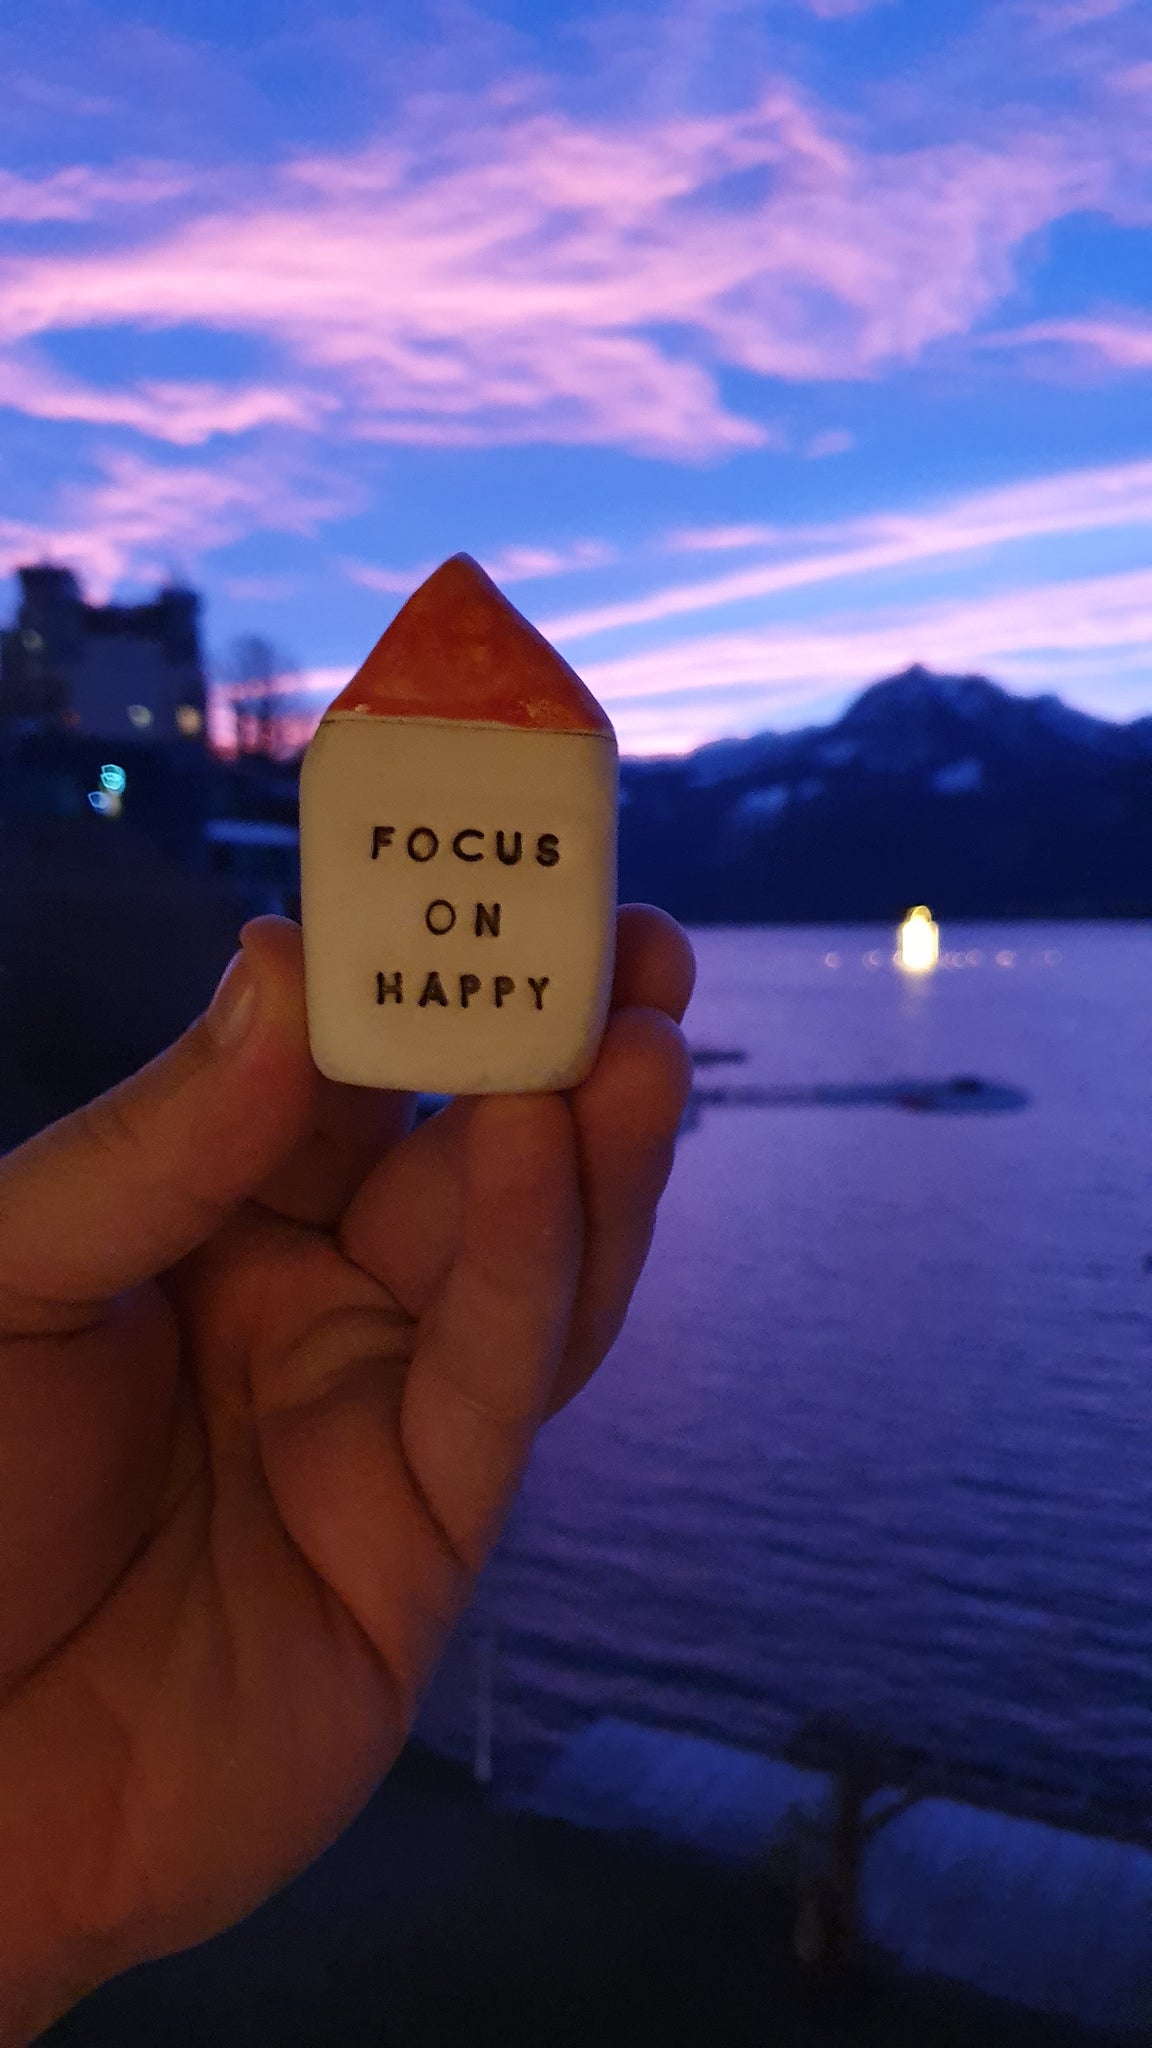 Focus on happy 